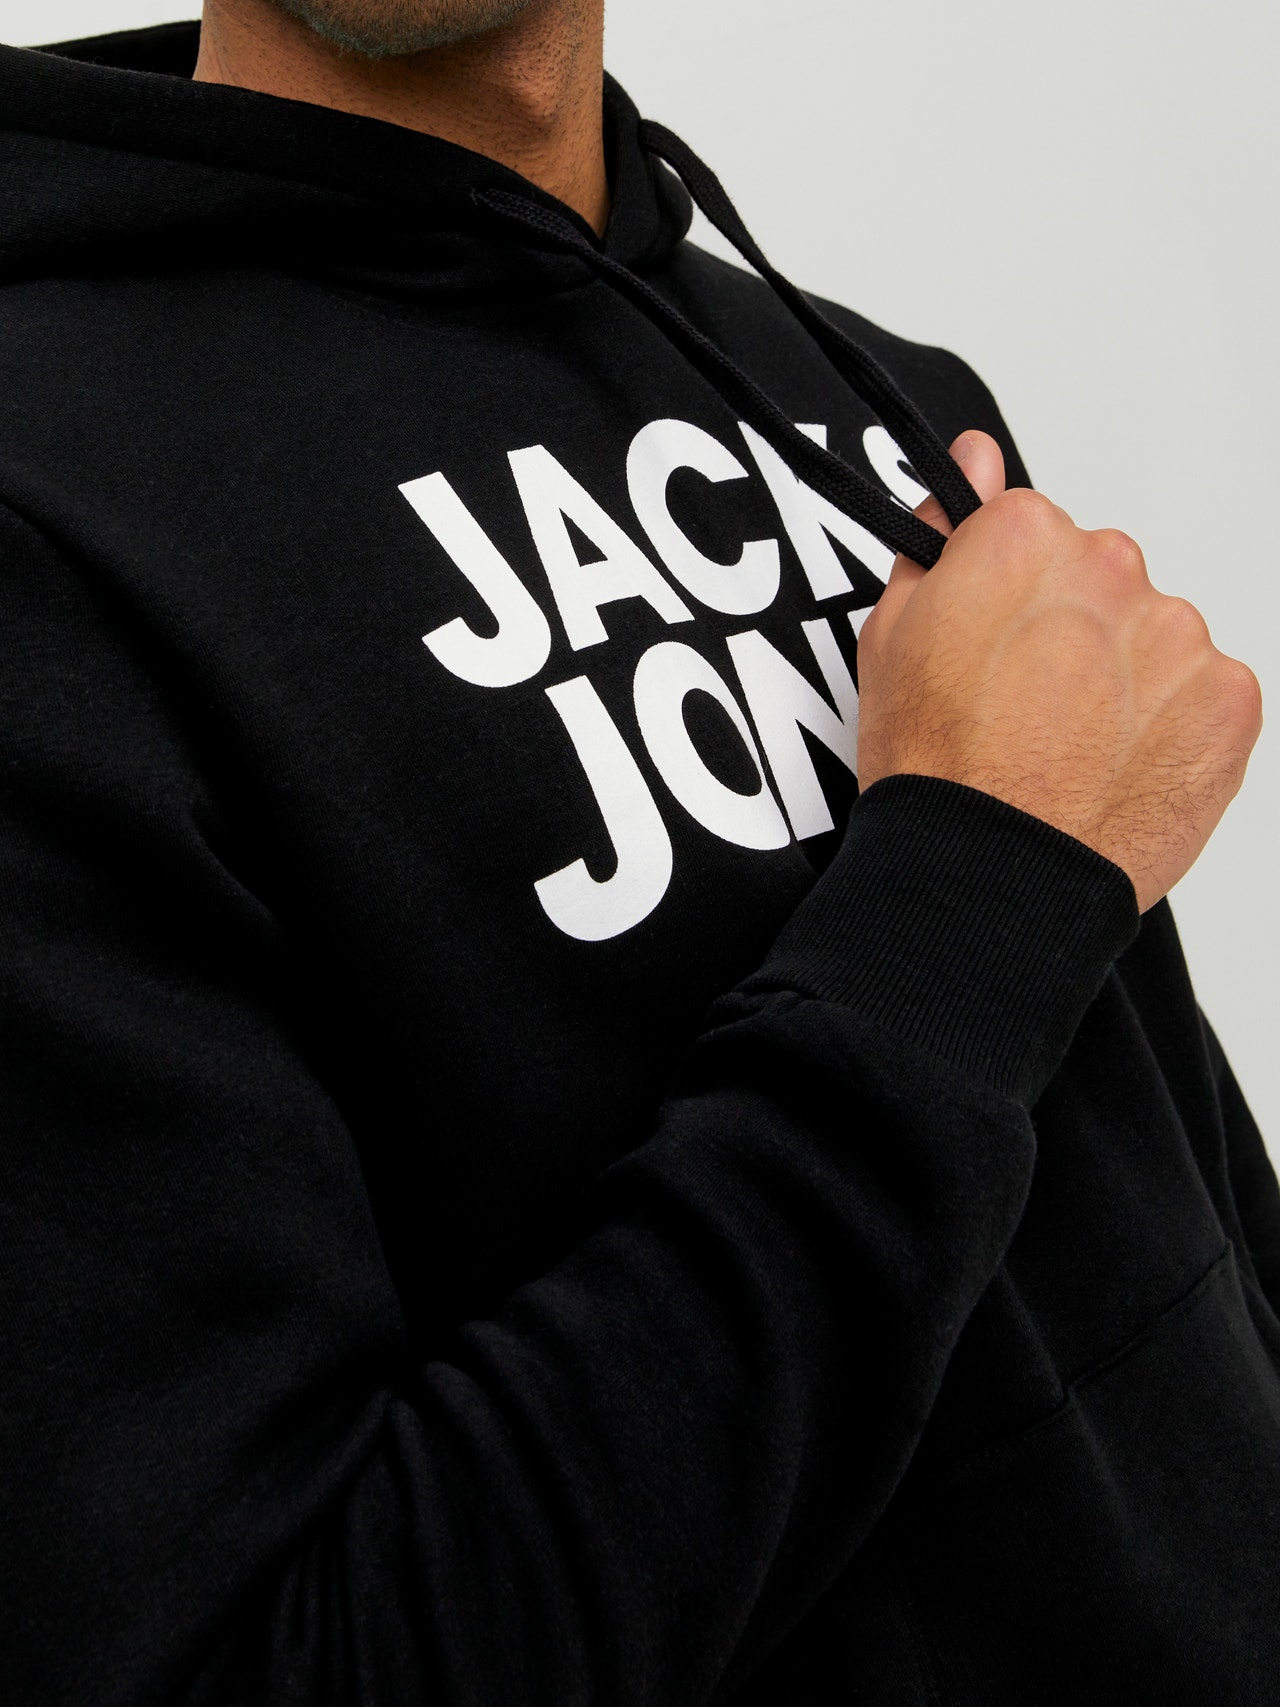 Jack & Jones Logo Hoodie -Black - 12152840